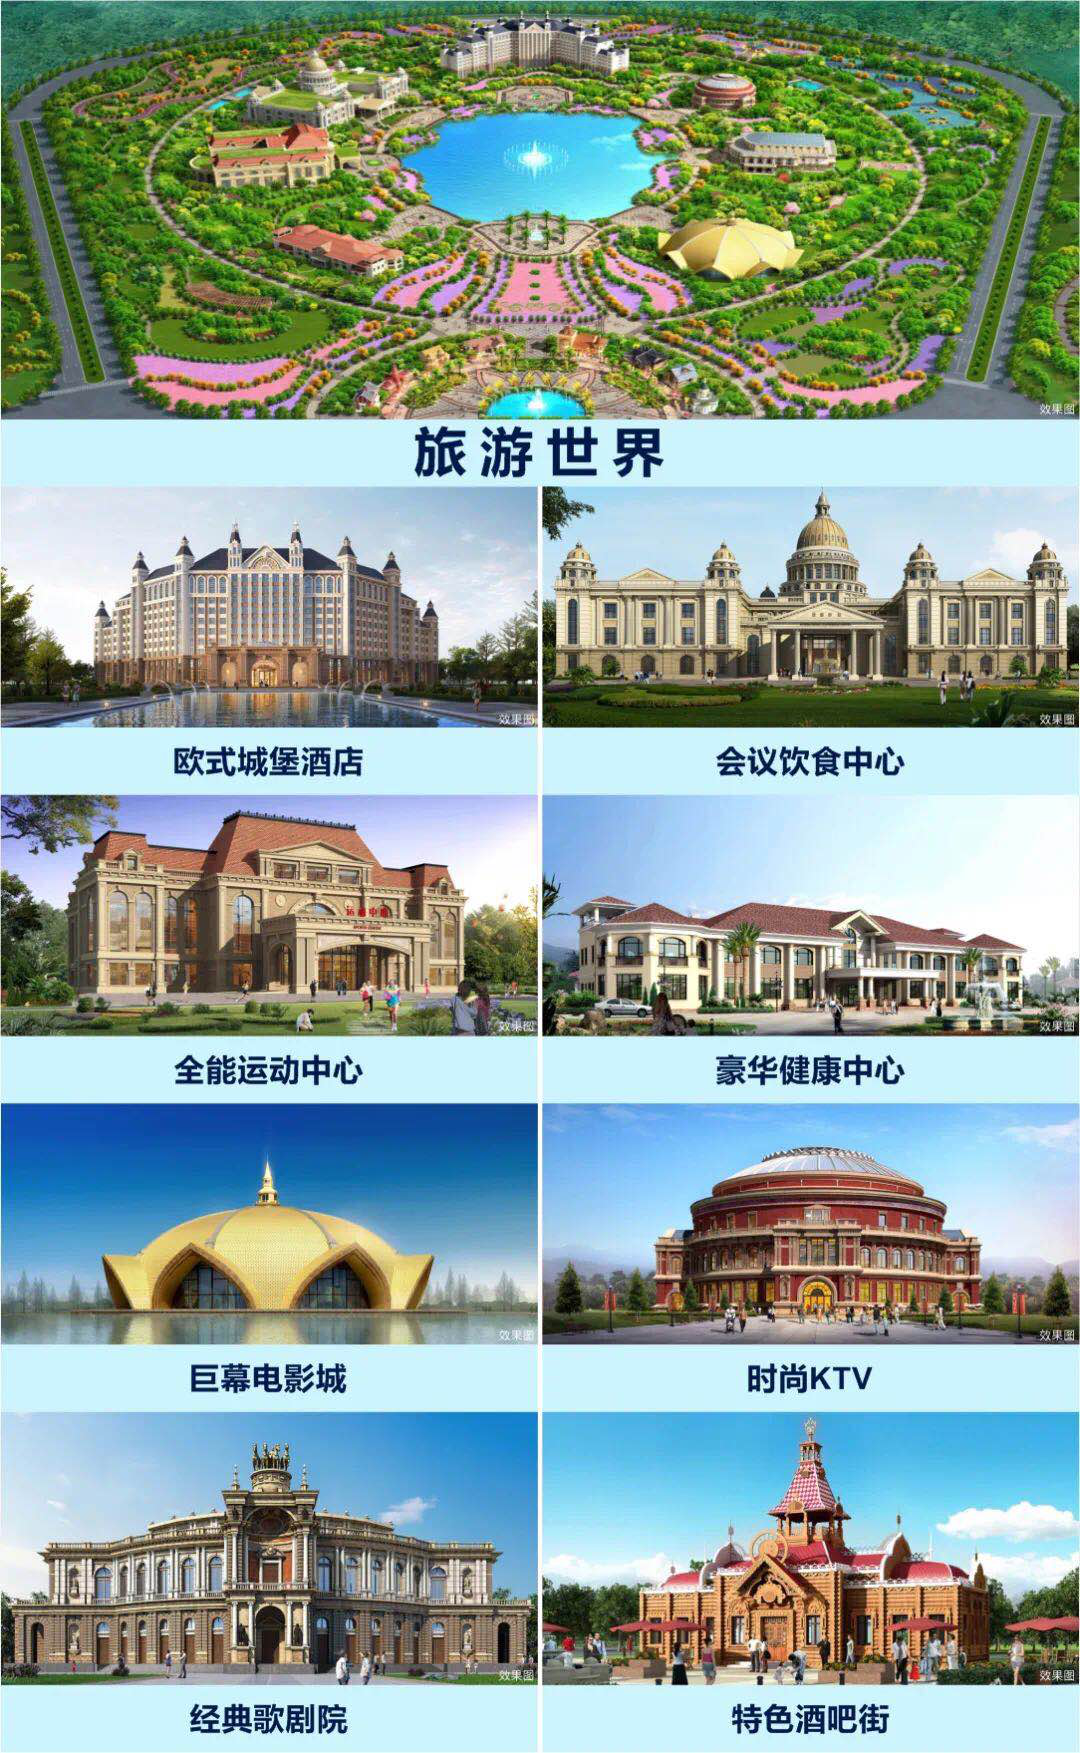 恒大文旅城&养生谷亮相在即 宁滁区域发展迎重码-中国网地产